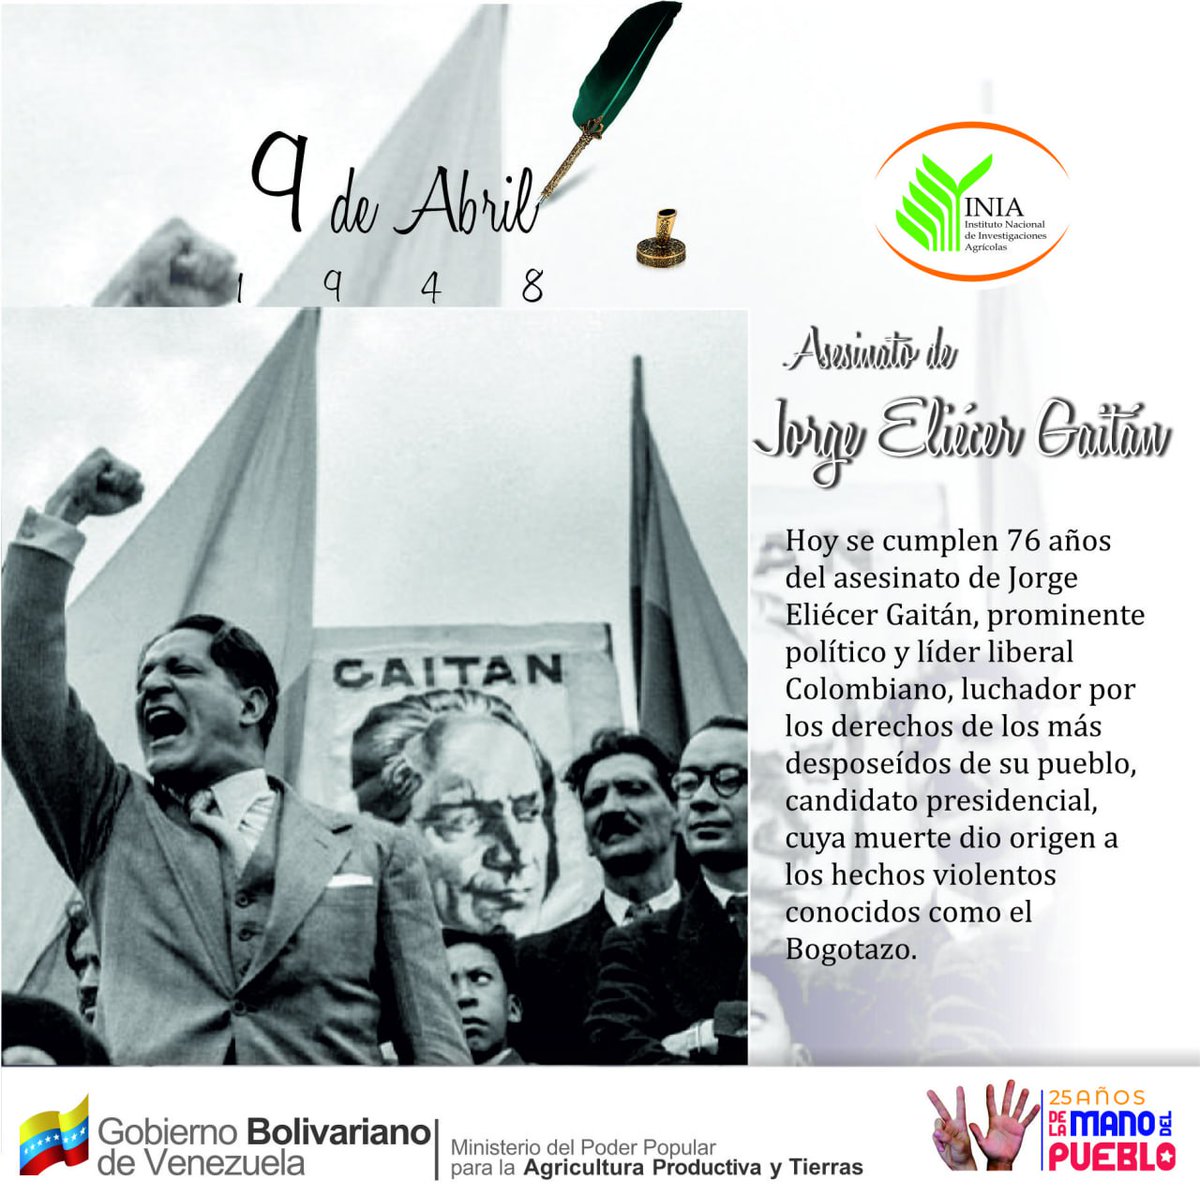 #Efeméride | Hoy #9Abr se cumplen 76 años del asesinato de Jorge Eliécer Gaitán, prominente político y líder liberal colombiano, quien en vida fue un luchador por los derechos de lo mas desposeídos de su pueblo. @NicolasMaduro @wcastroPSUV @MinAgriculturaV . . #AvanzaPuebloUnido